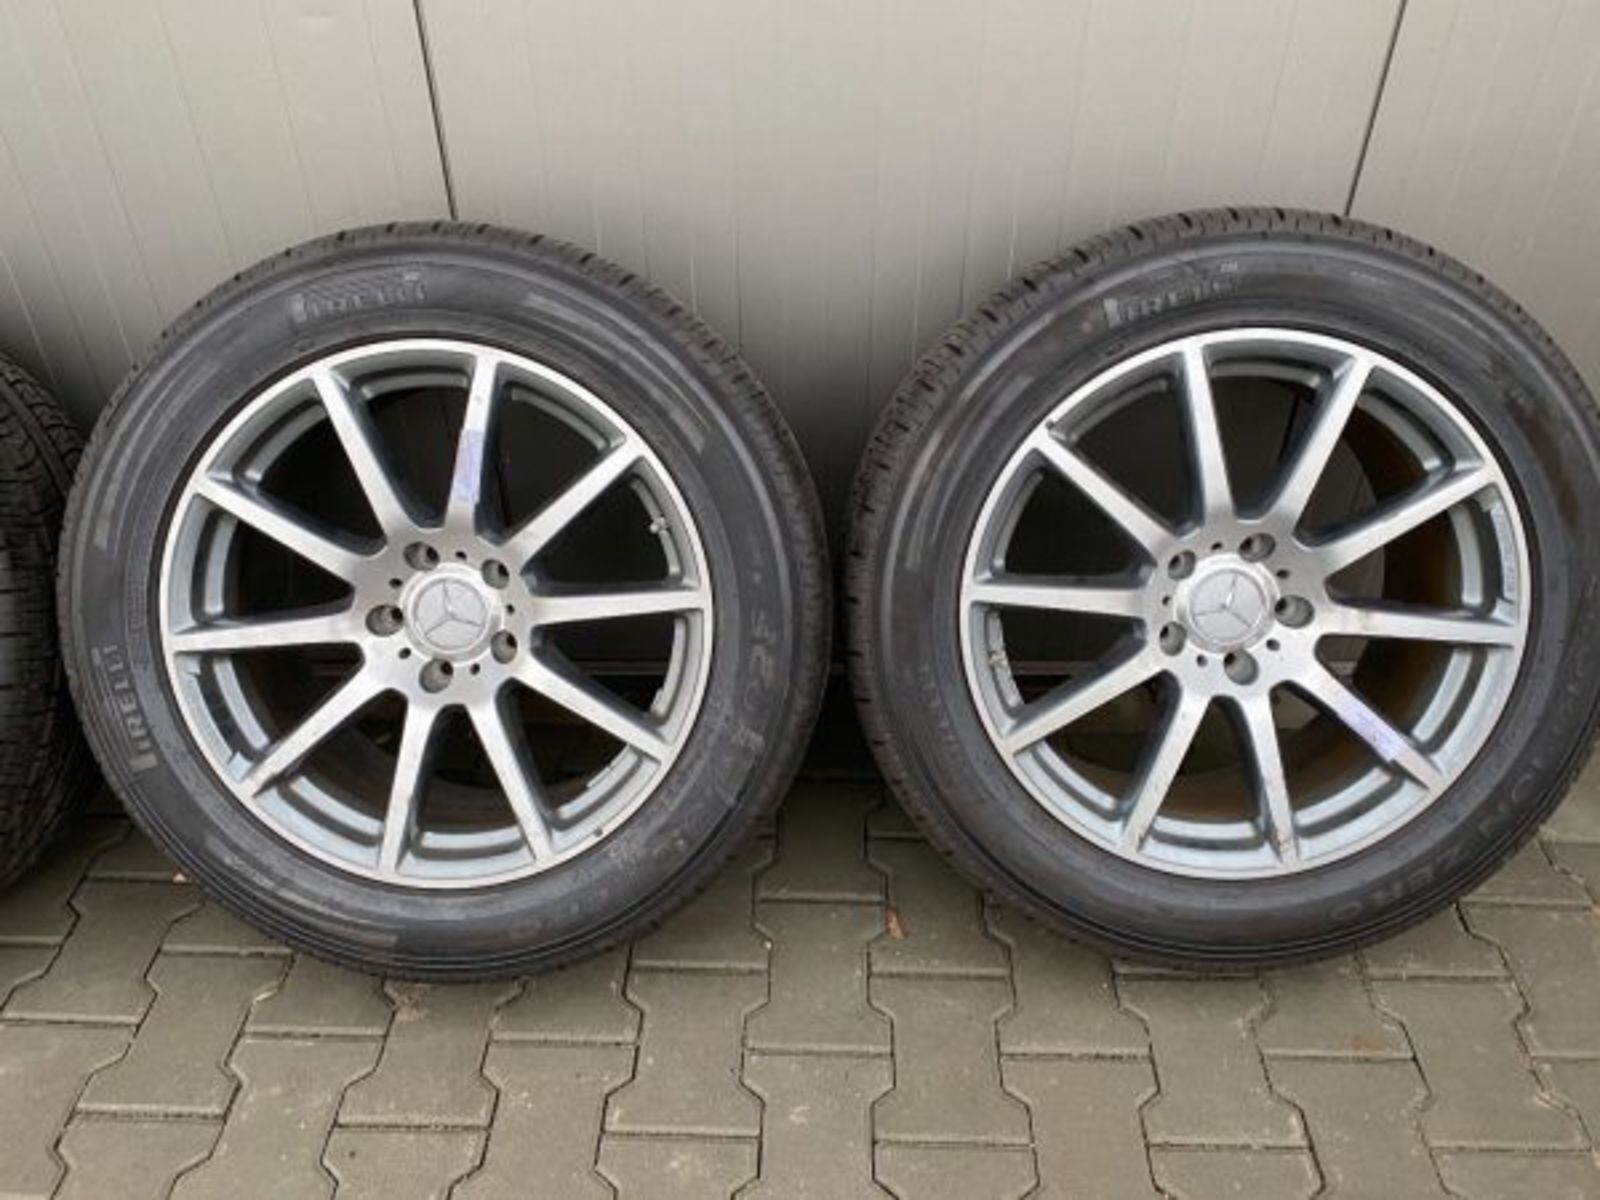 MERCEDES G63 G KLASSE Rader satz wheels set 20 inch 354830089339 4